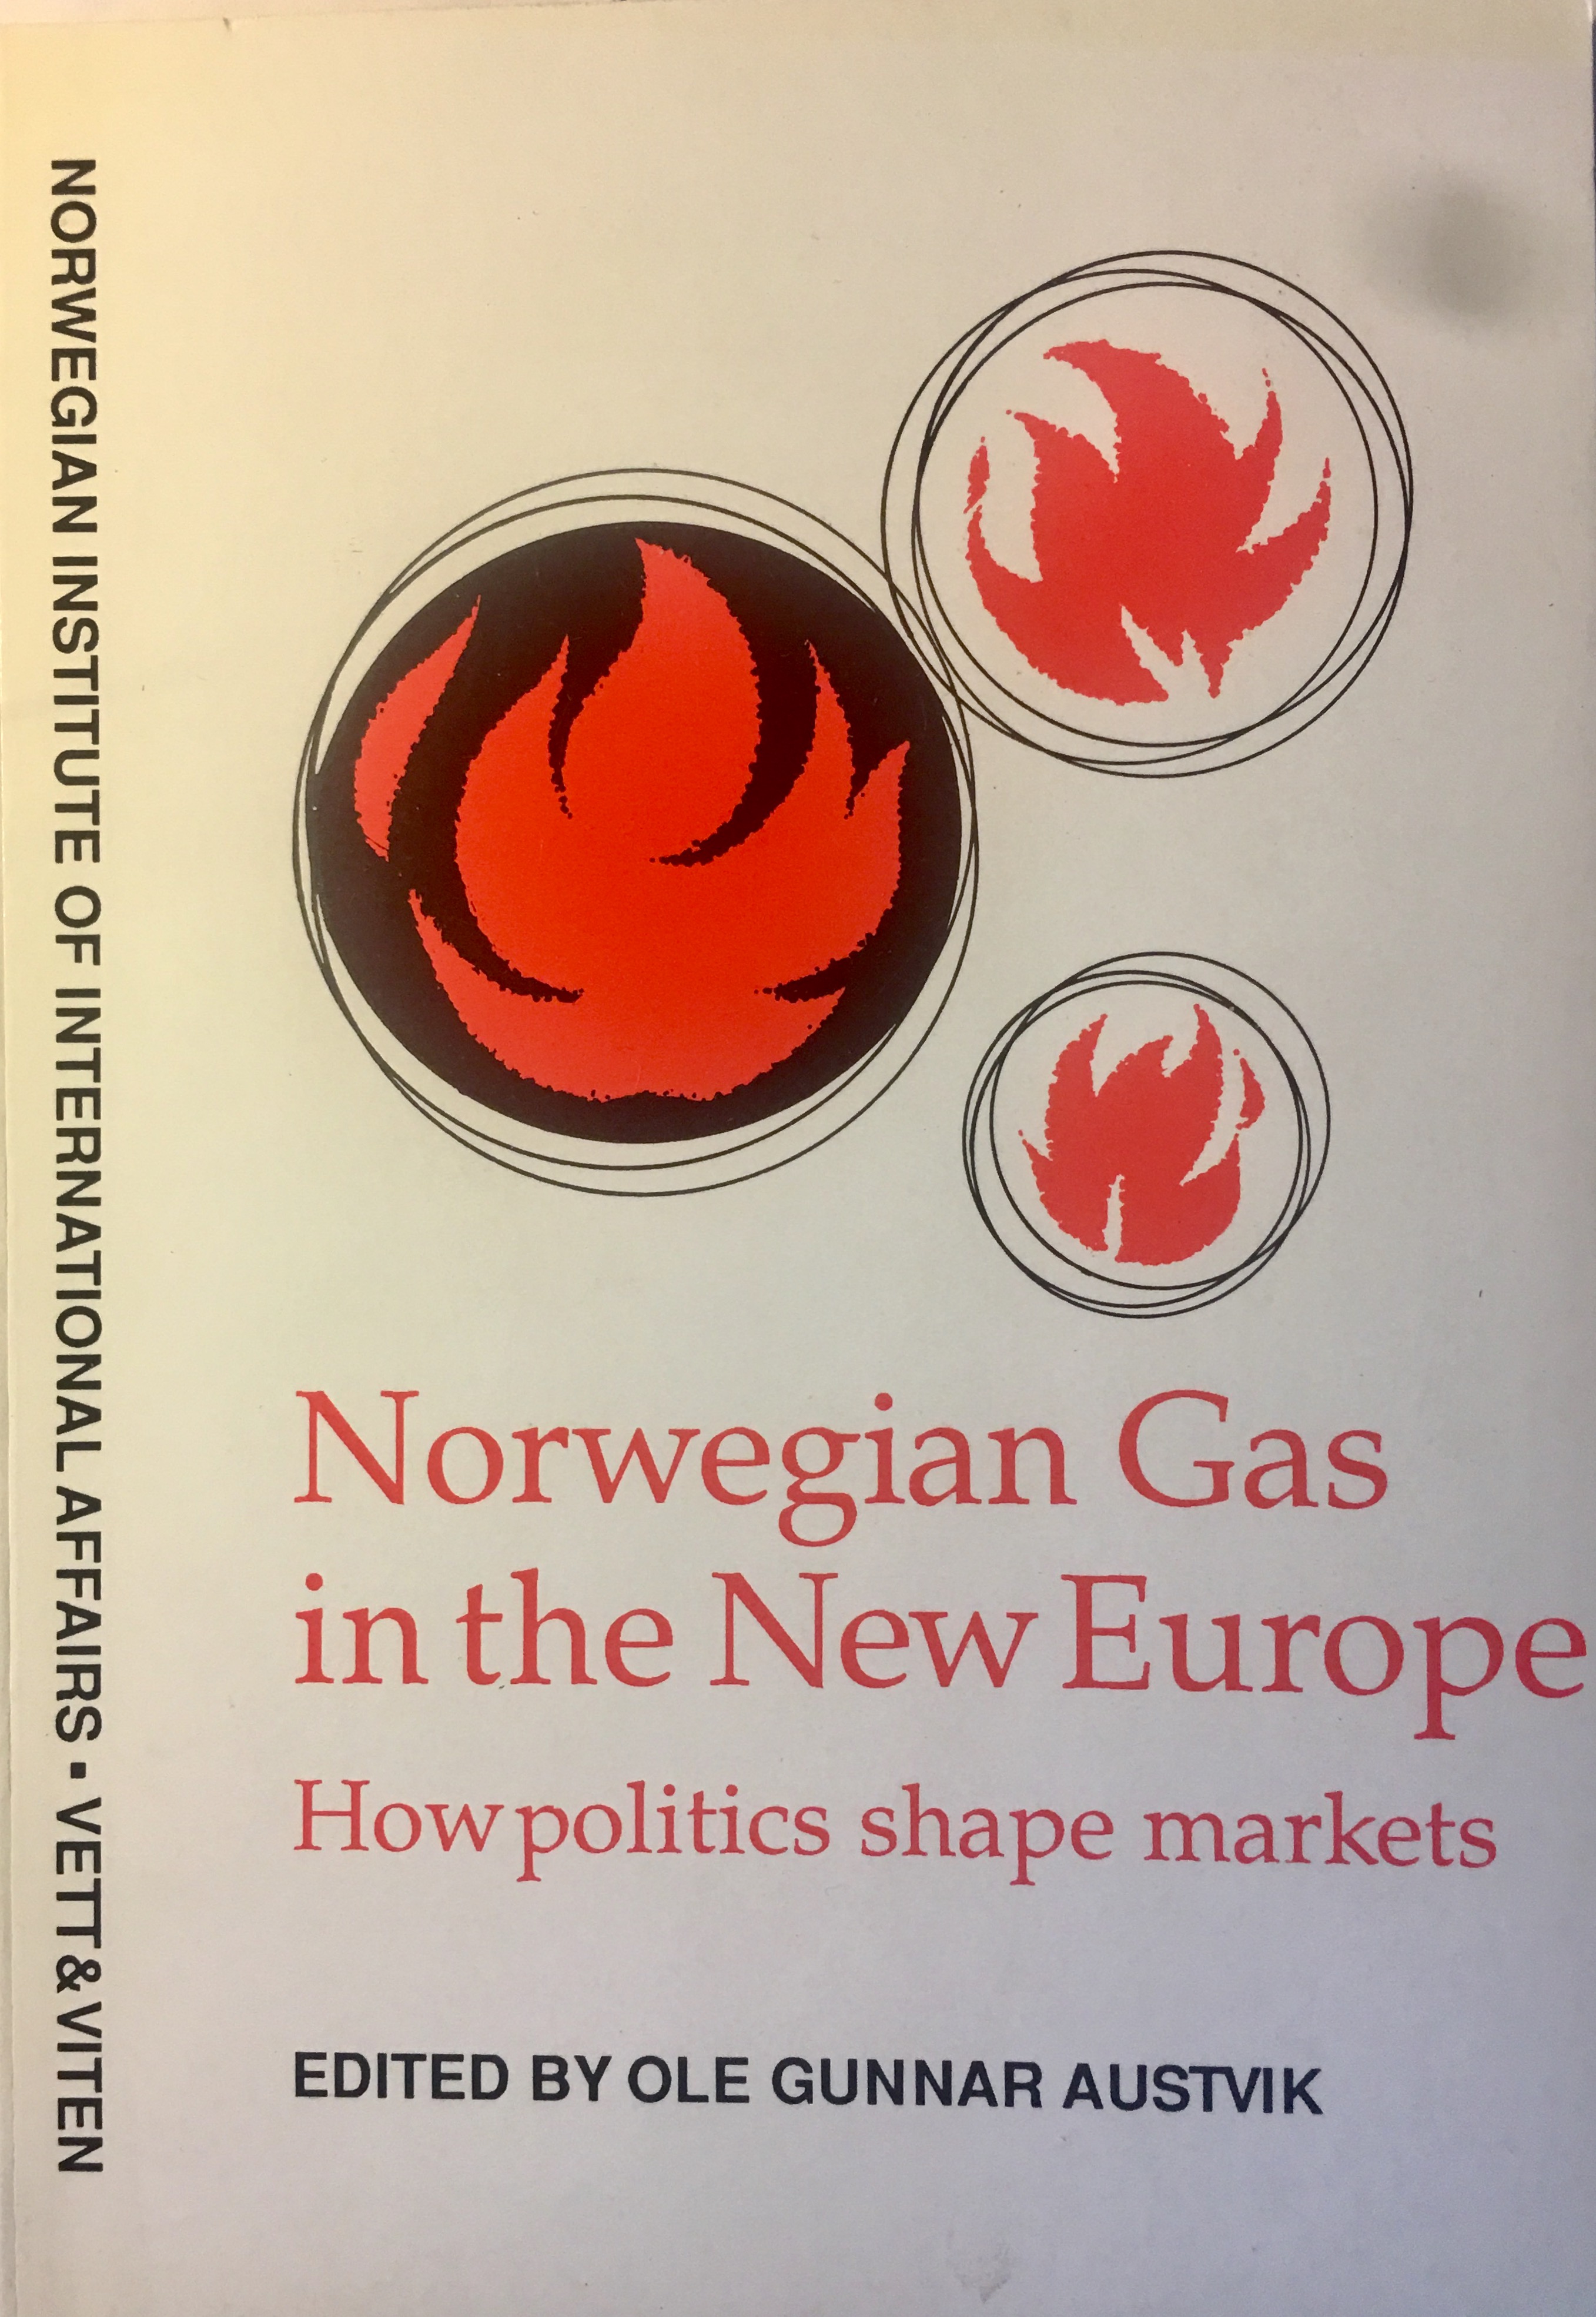 Norwegian Gas in New Europe